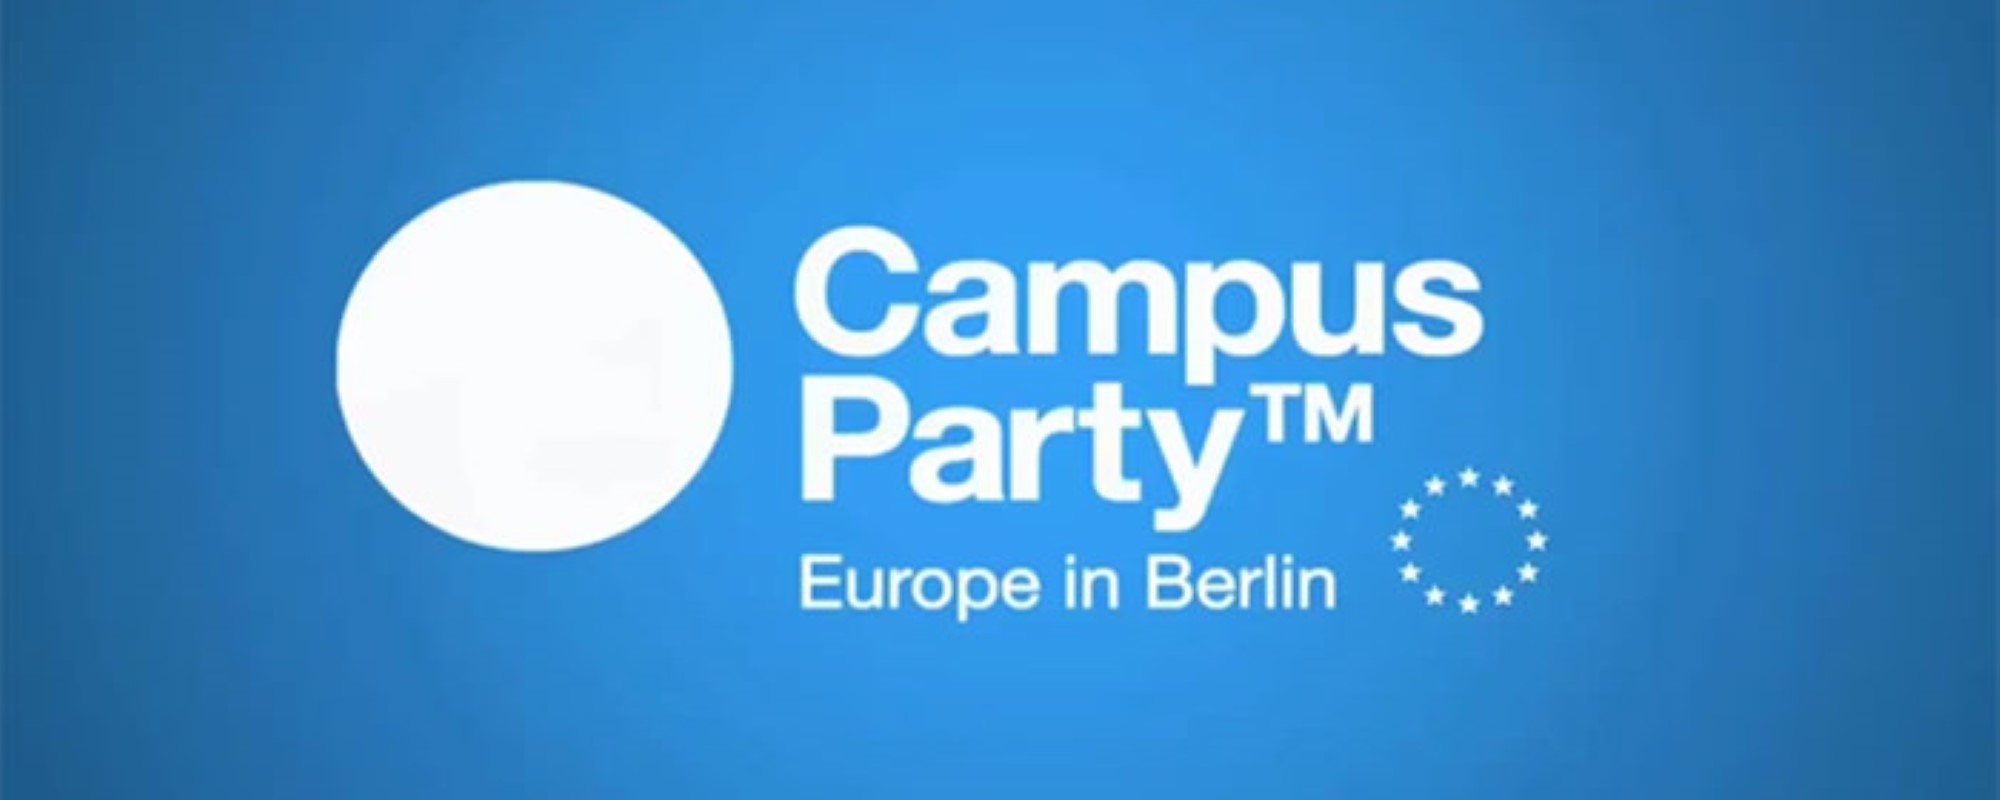 Campus Party Berlin